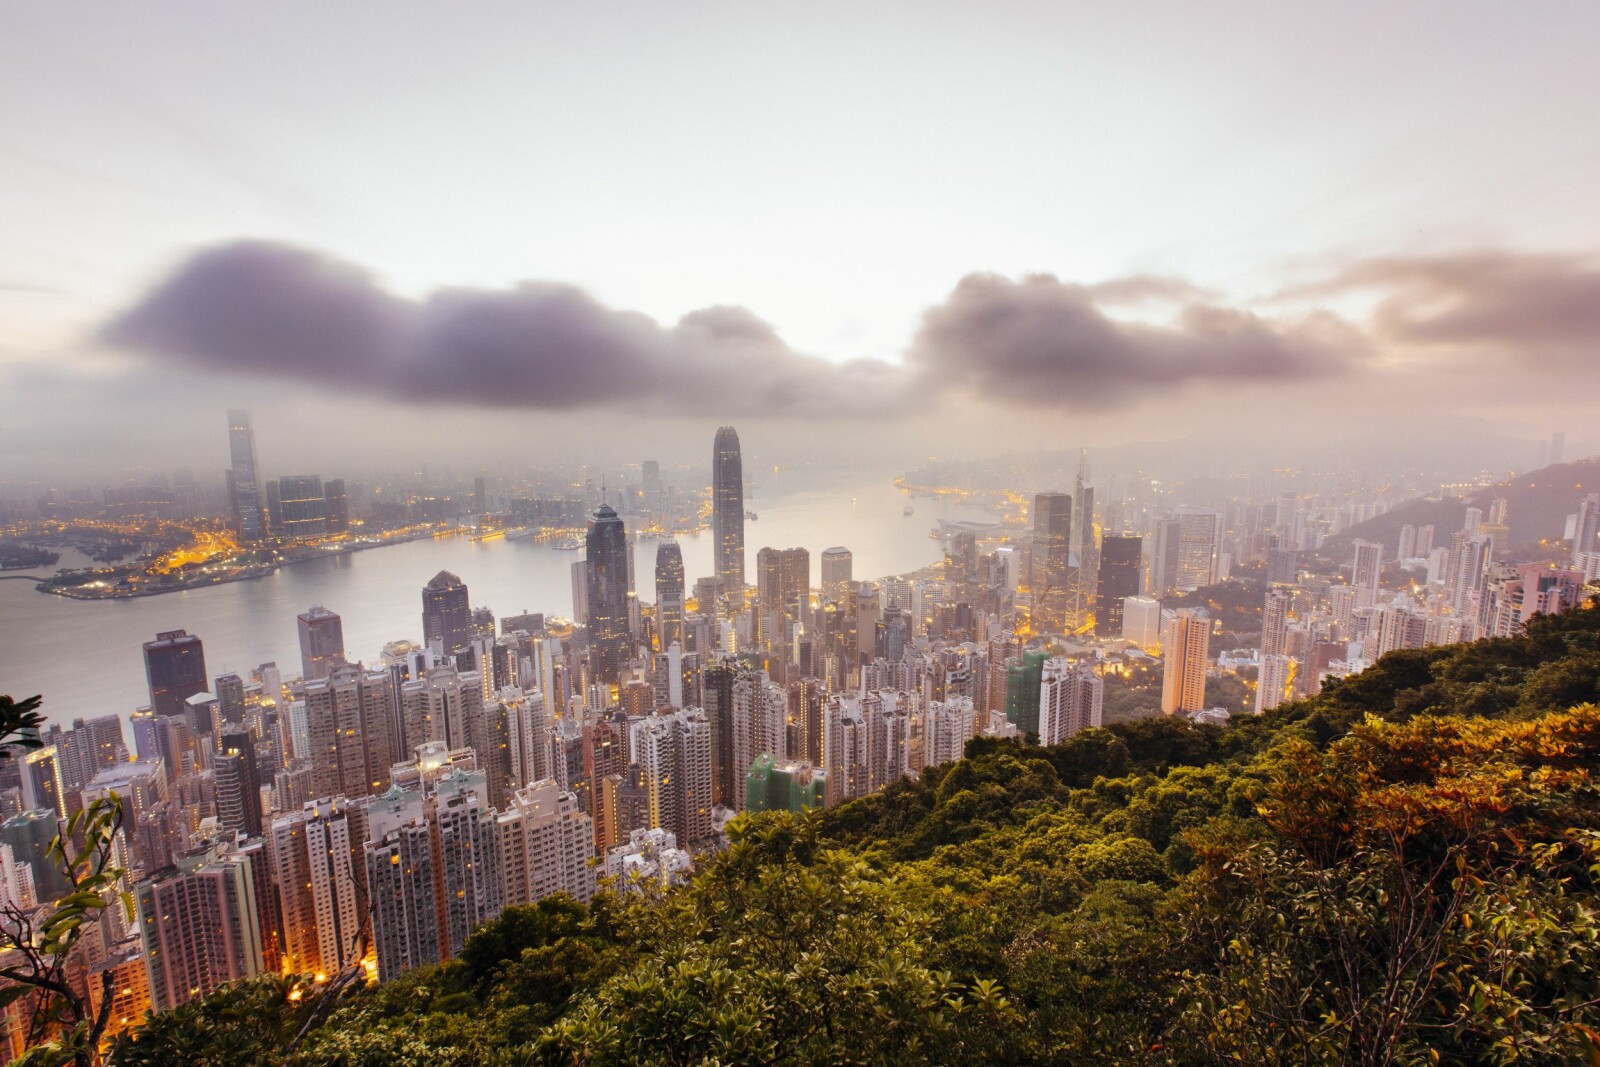 <b>THE PEAK:</b> Fra The Peak, det høyeste punktet på øya, kan man seg utover Hongkong og byens skyskrapere. Fra dette perspektivet ser megabyen ut som en gigantisk leketøysby satt sammen av et barn med klosser. Opp til The Peak kan du ta bane (thepeak.com.hk)